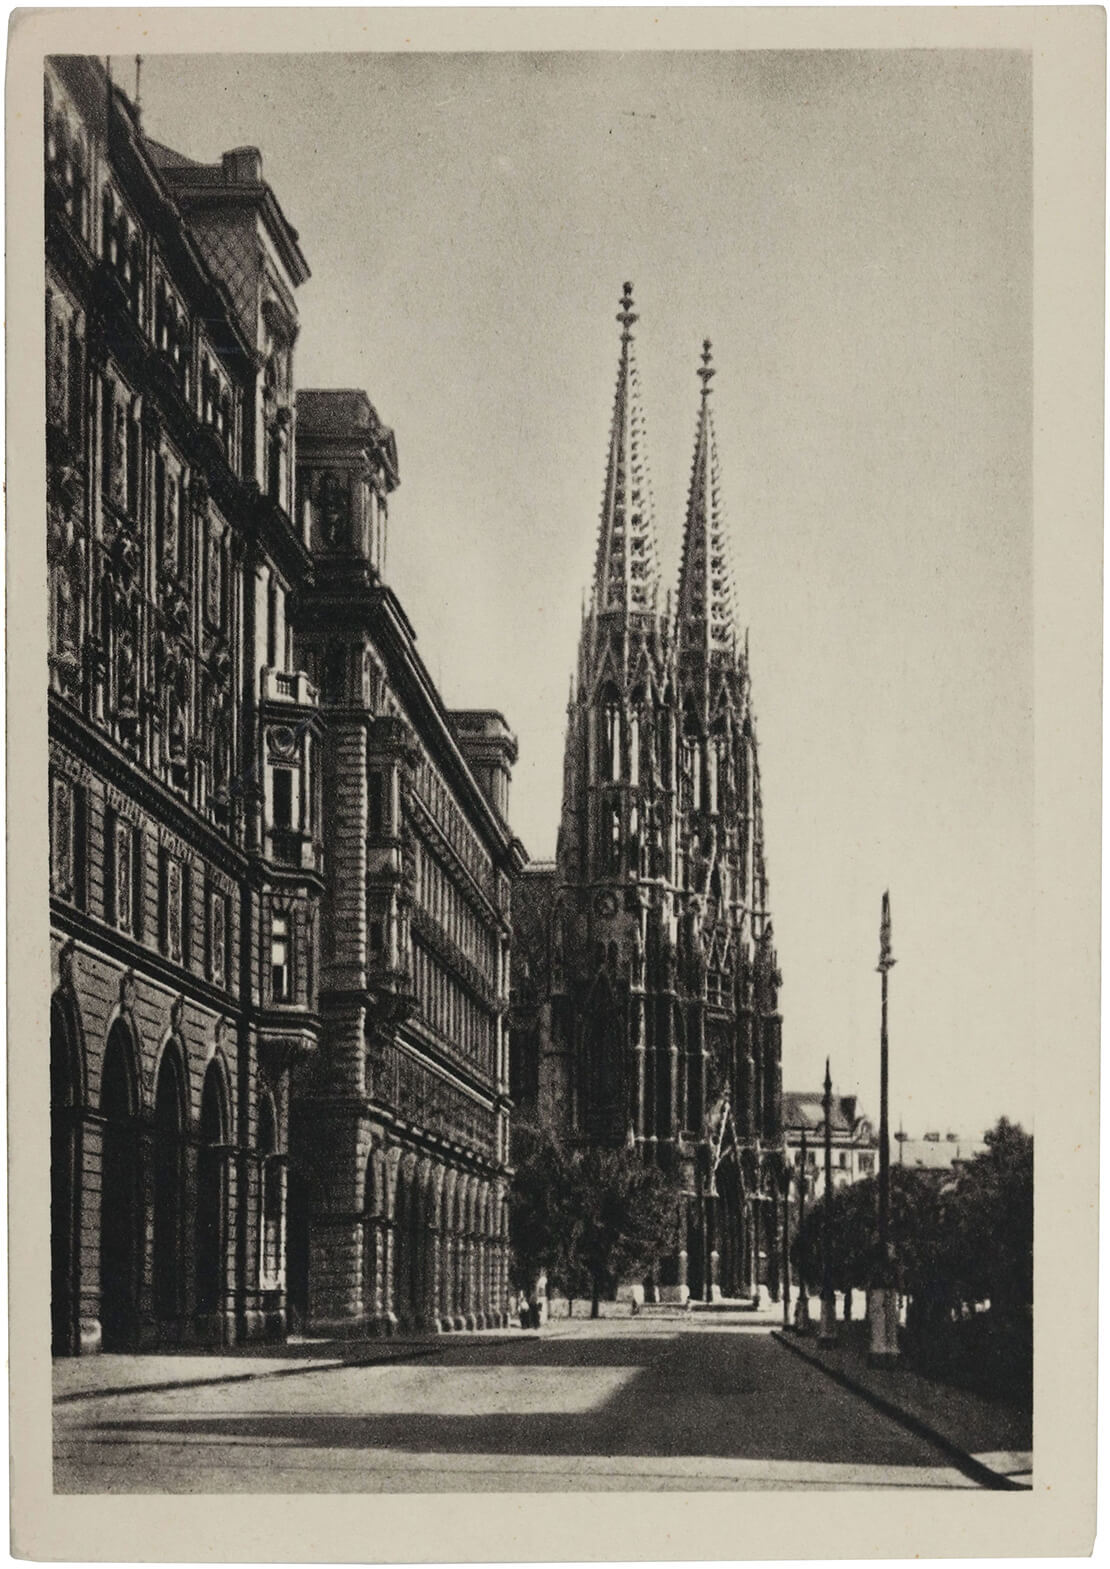 Blick auf die Votivkirche, Ansichtskarte, 1950, Wien Museum 